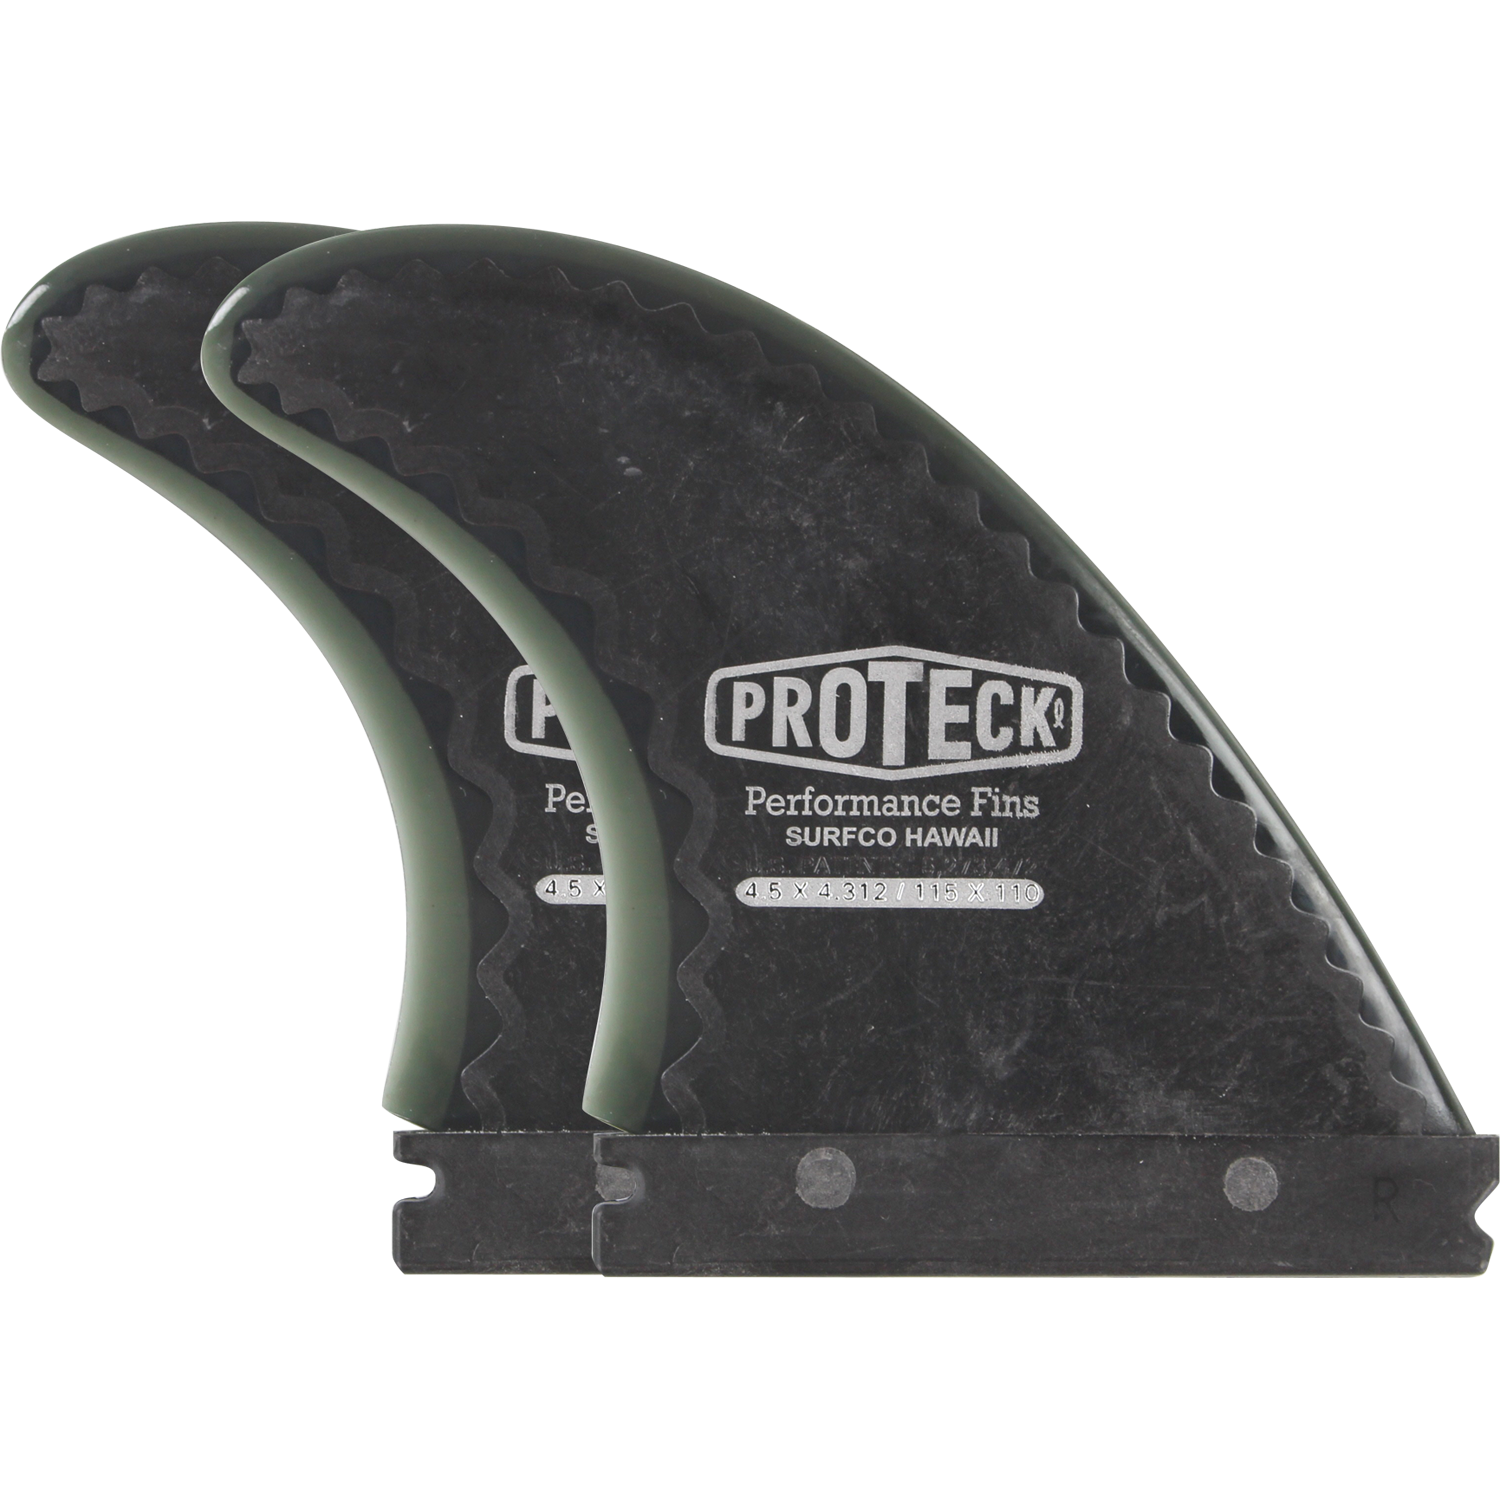 Proteck Perform Ffs Side 4.5 Black Surfboard FIN  -  SET OF 2PCS